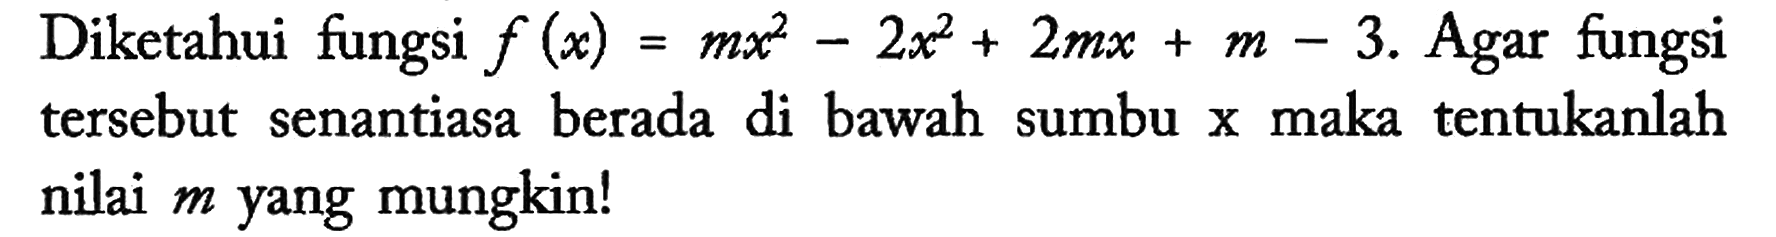 Diketahui fungsi f(x)=mx^2 - 2x^2 + 2mx + m-3. Agar fungsi tersebut senantiasa berada di bawah sumbu x maka tentukanlah nilai m yang mungkin!